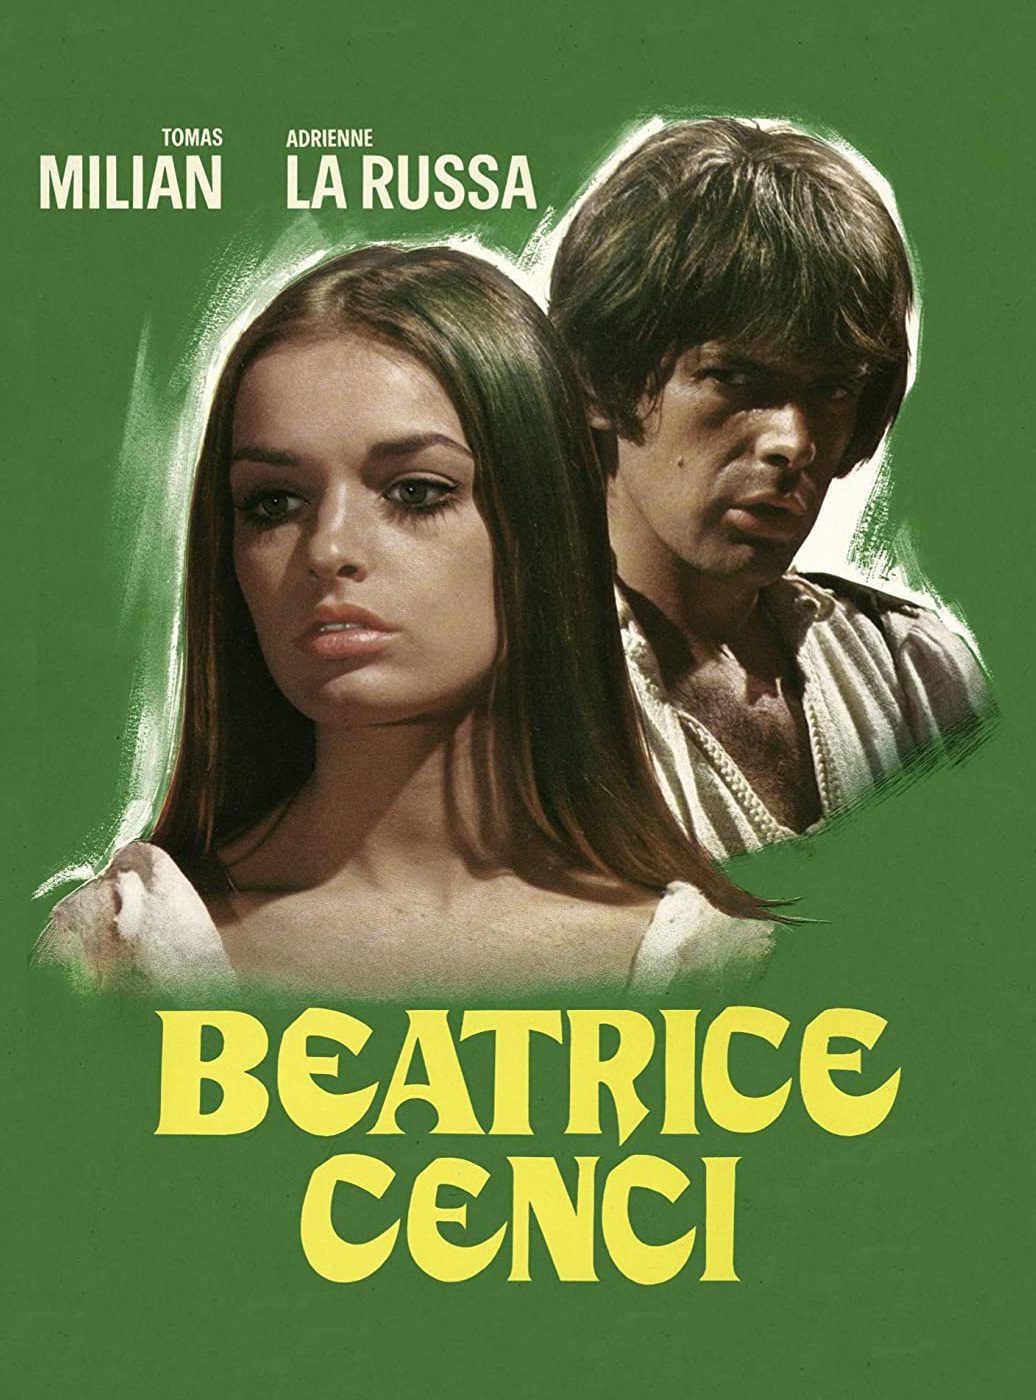 Beatrice Cenci [HD] (1969)